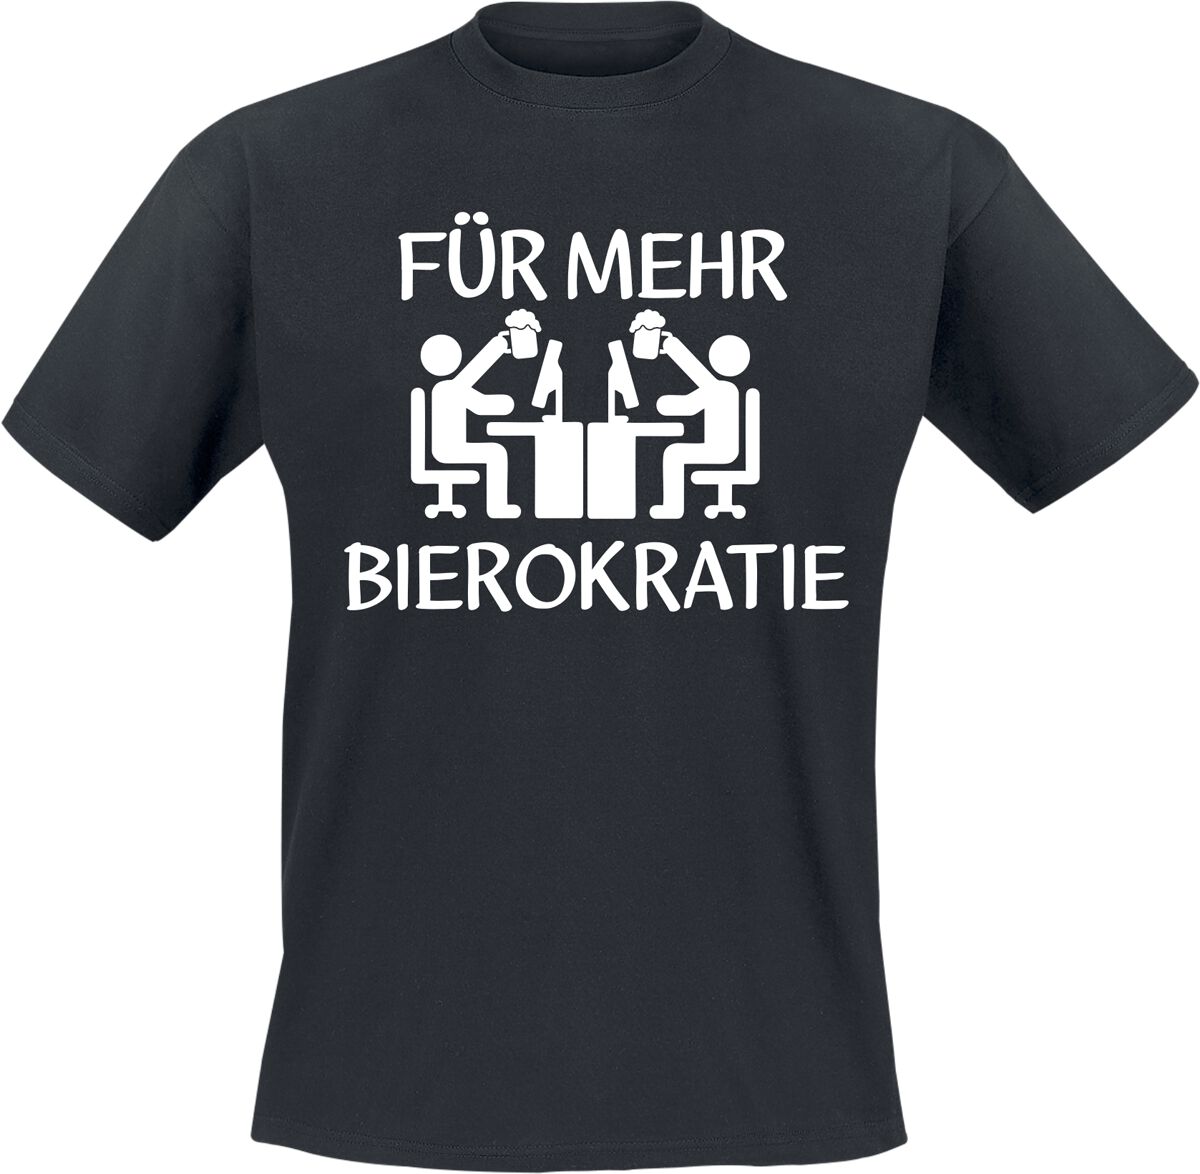 Alkohol & Party T-Shirt - Für mehr Bierokratie - M bis 3XL - für Männer - Größe XXL - schwarz